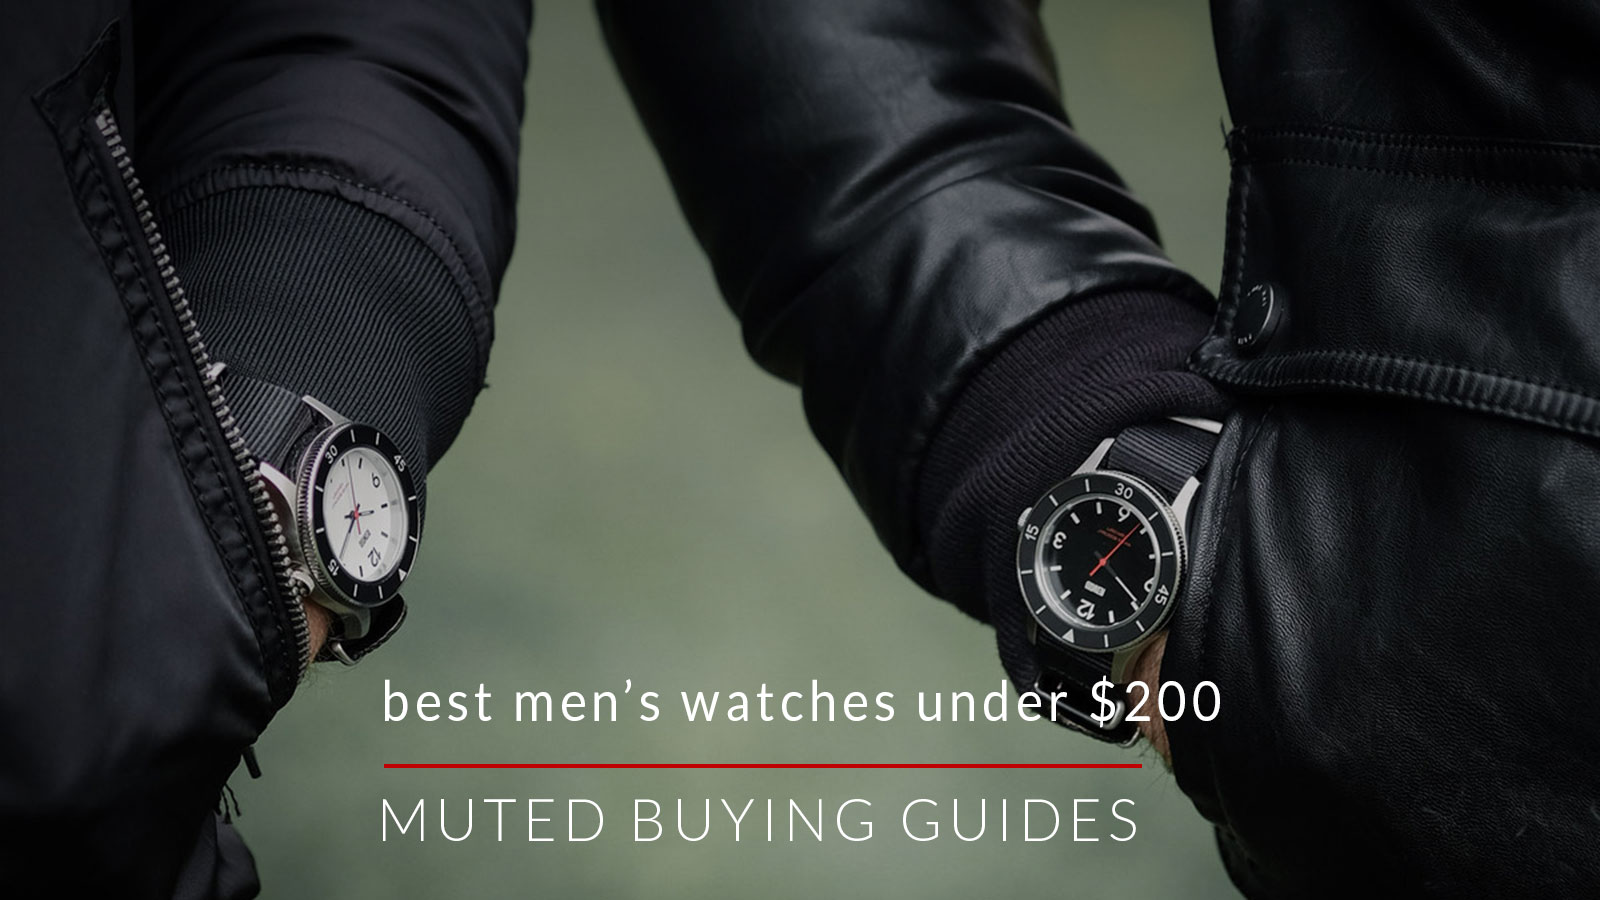 Best Men's Watches Under $200